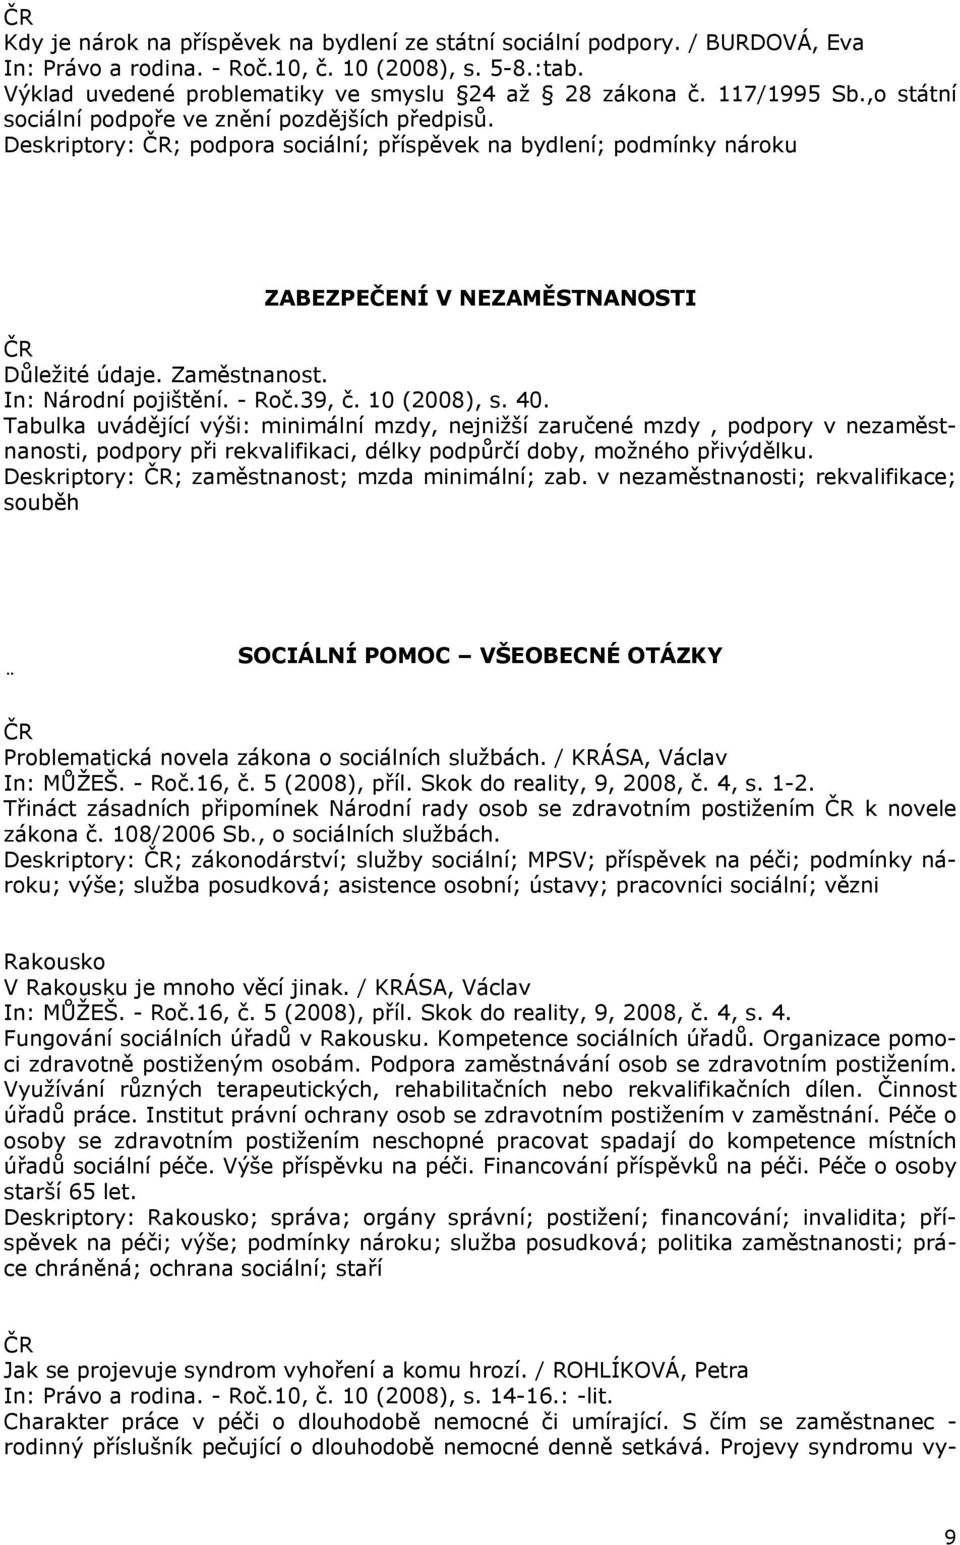 In: Národní pojištění. - Roč.39, č. 10 (2008), s. 40.